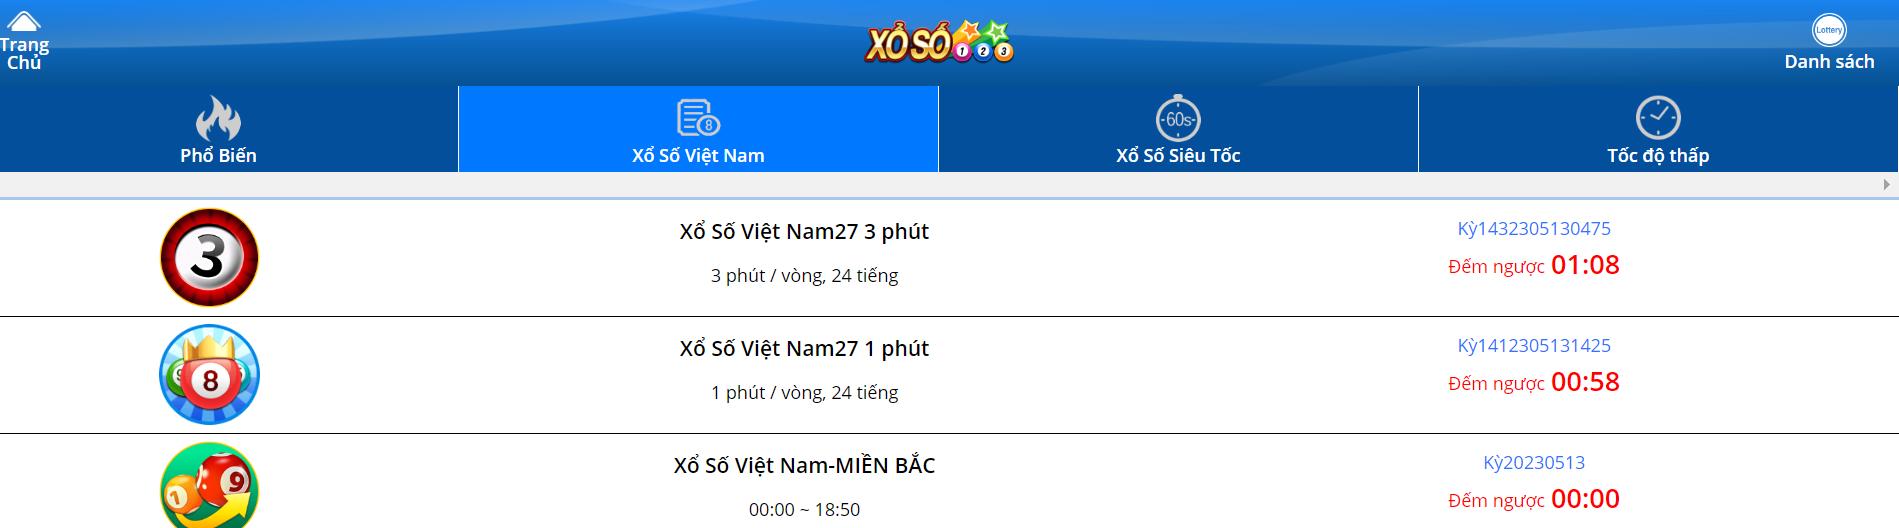 Hướng dẫn chơi xổ số Hồ Chí Minh VIP tại VIN777 